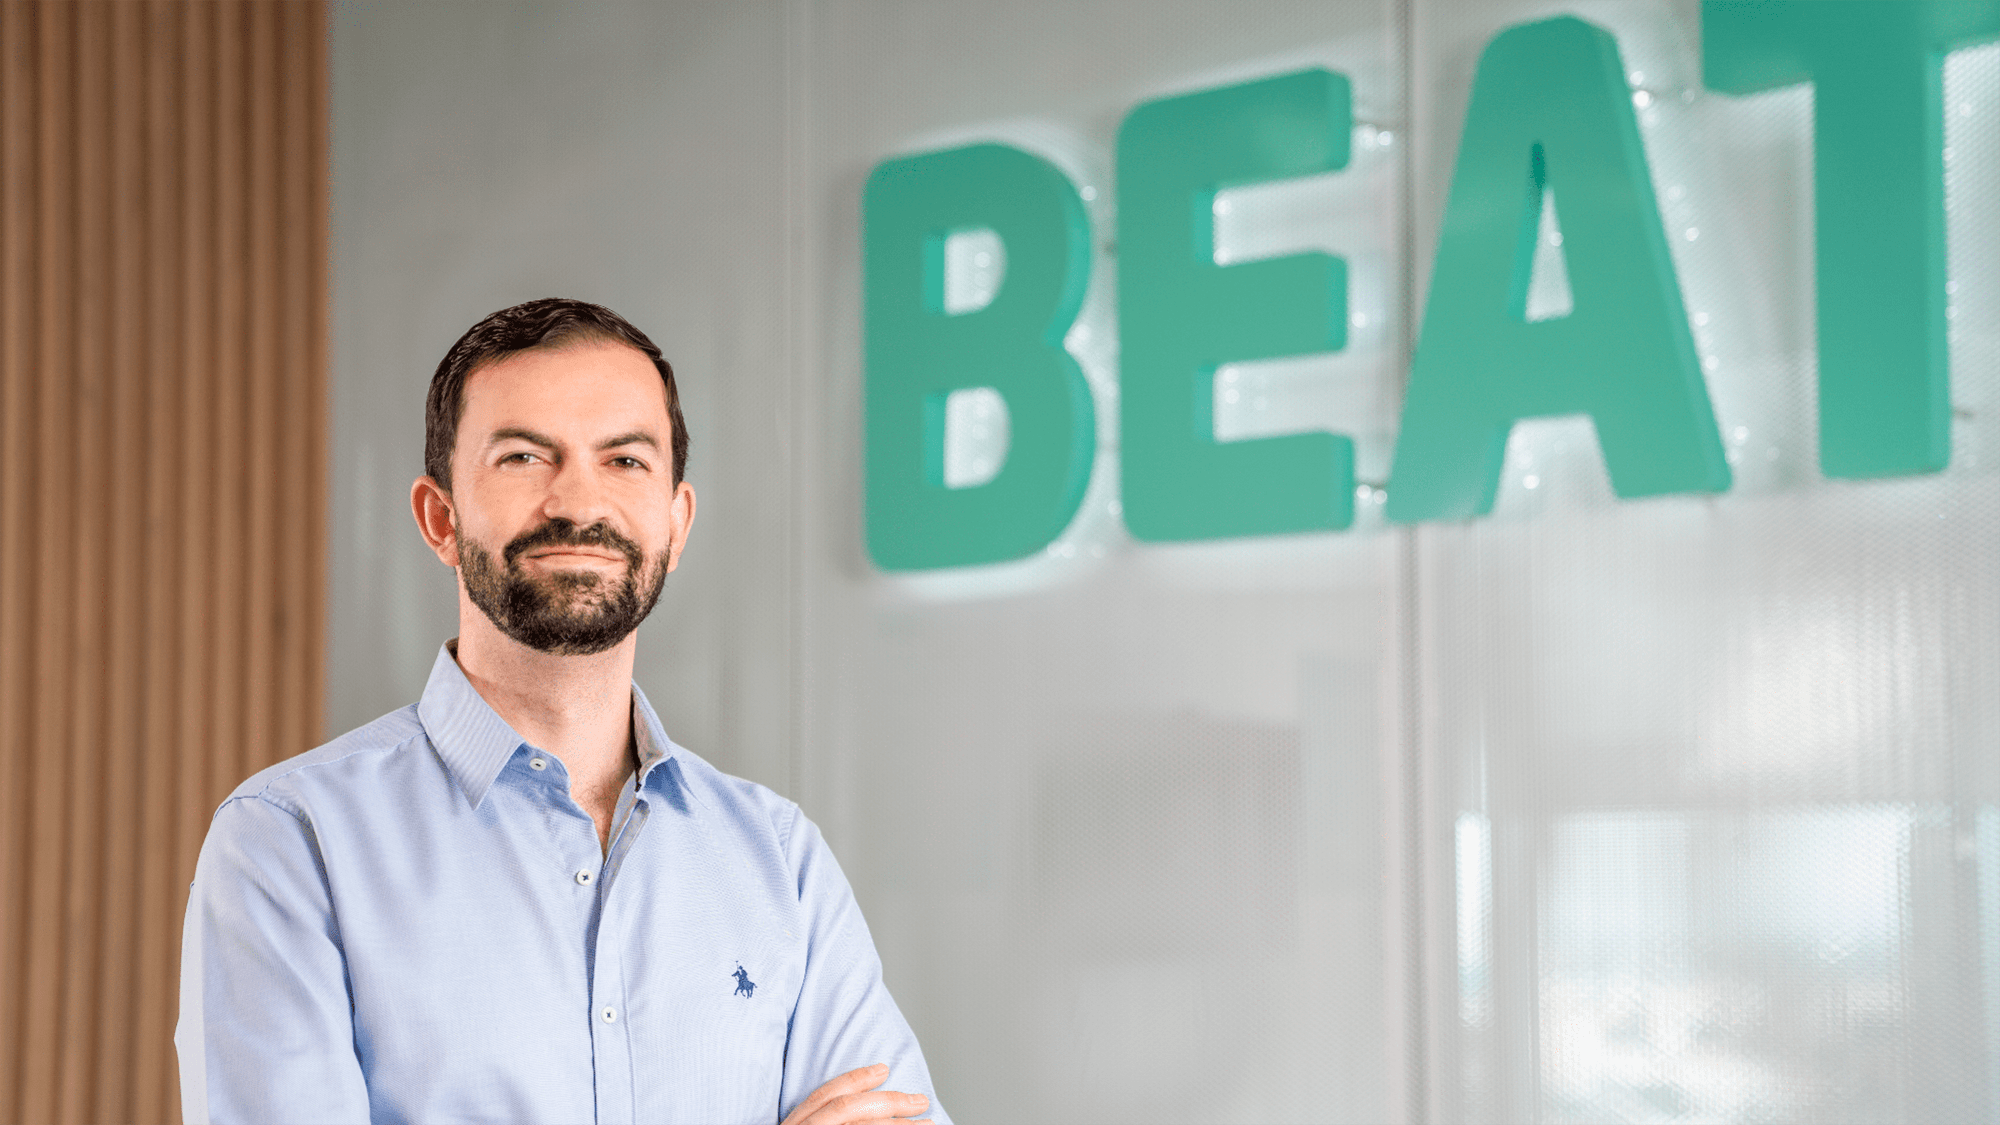 BEAT nombra a Enrique Mendoza como nuevo director general en México